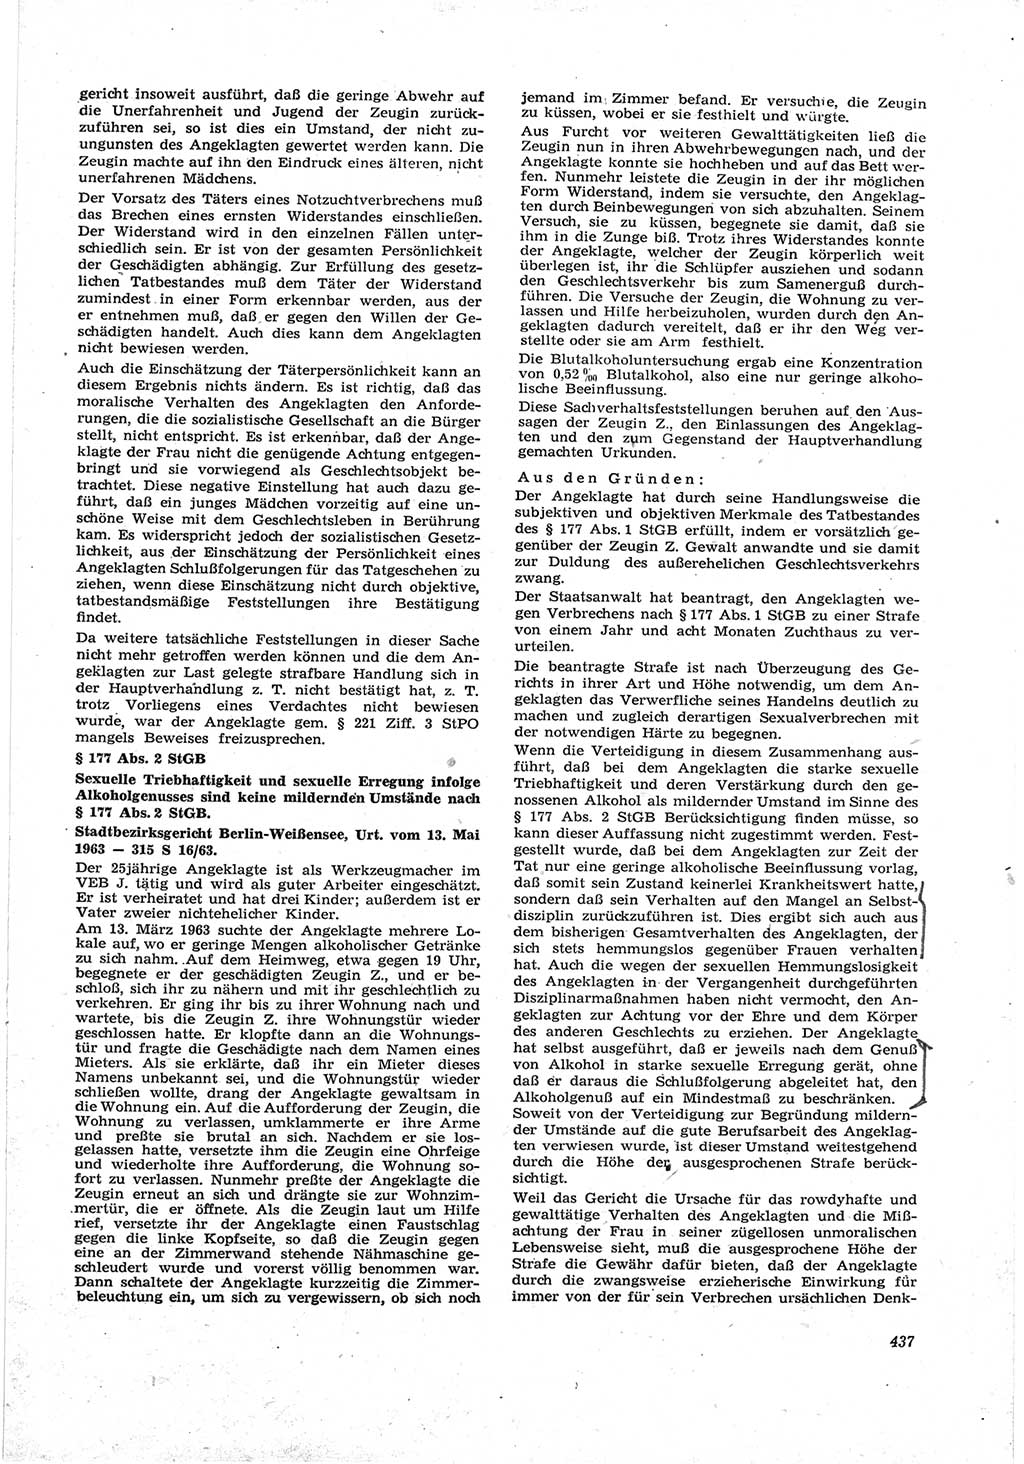 Neue Justiz (NJ), Zeitschrift für Recht und Rechtswissenschaft [Deutsche Demokratische Republik (DDR)], 17. Jahrgang 1963, Seite 437 (NJ DDR 1963, S. 437)